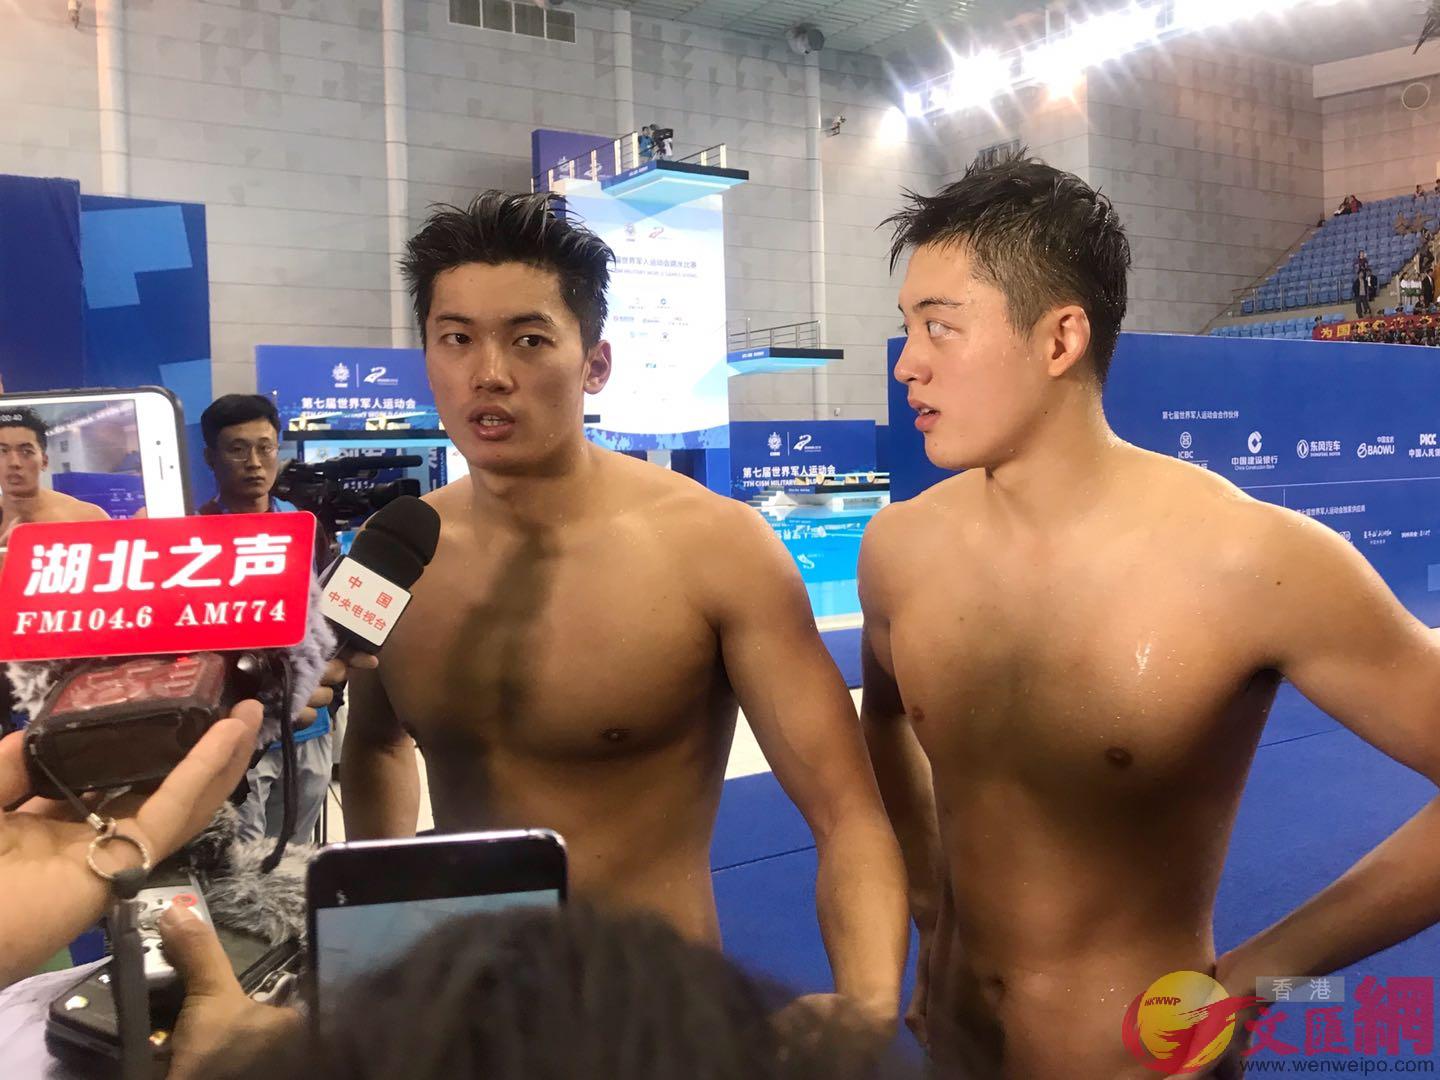 中國選手汪順]左^在賽後接受採訪時表示游好第一棒是自己的責任]實習記者潘鄰安 攝^